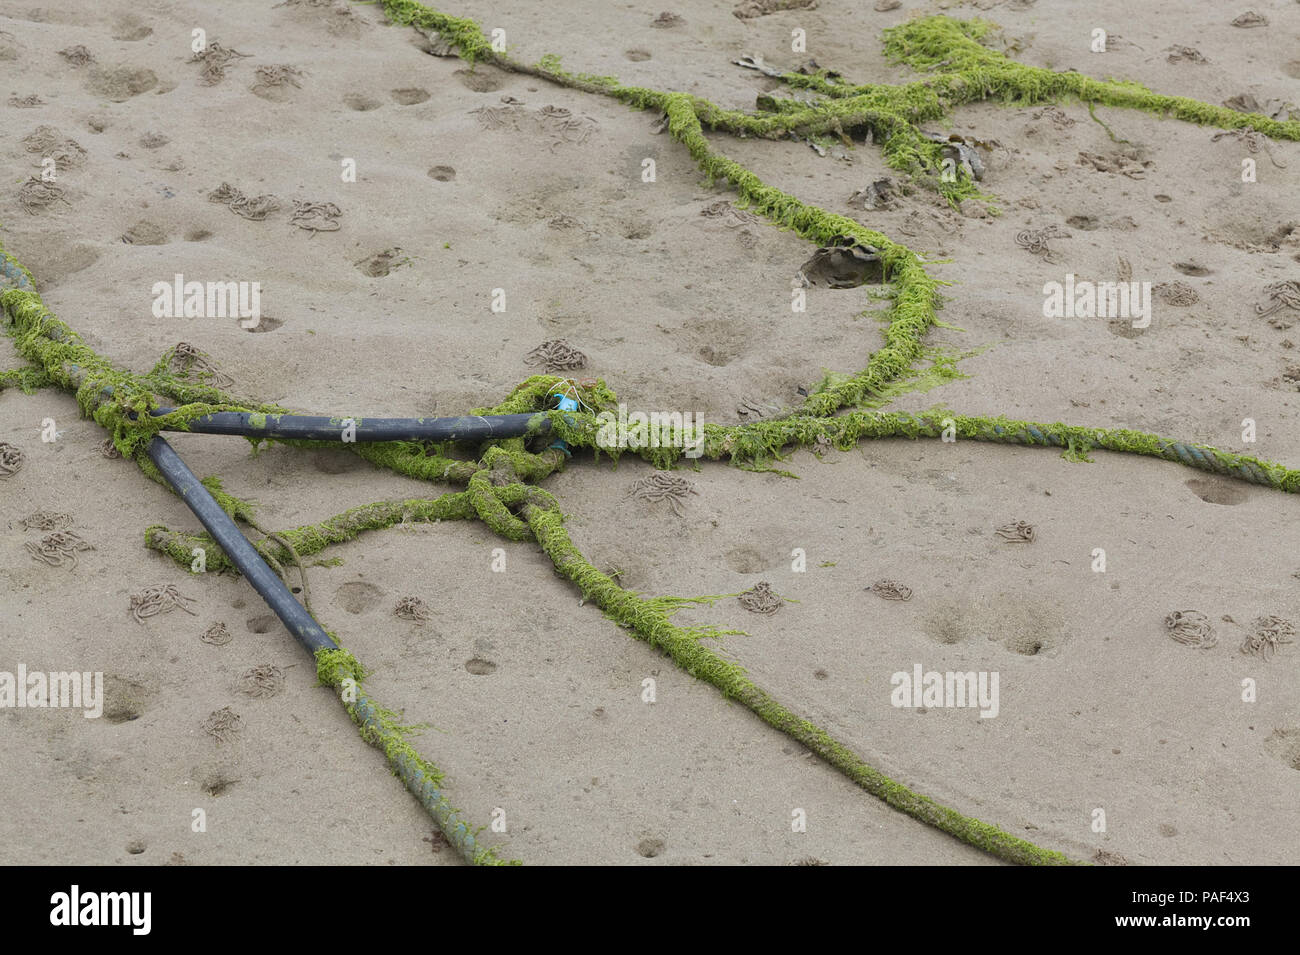 Bateau abandonné couvert de cordes dans des algues sur la plage Banque D'Images